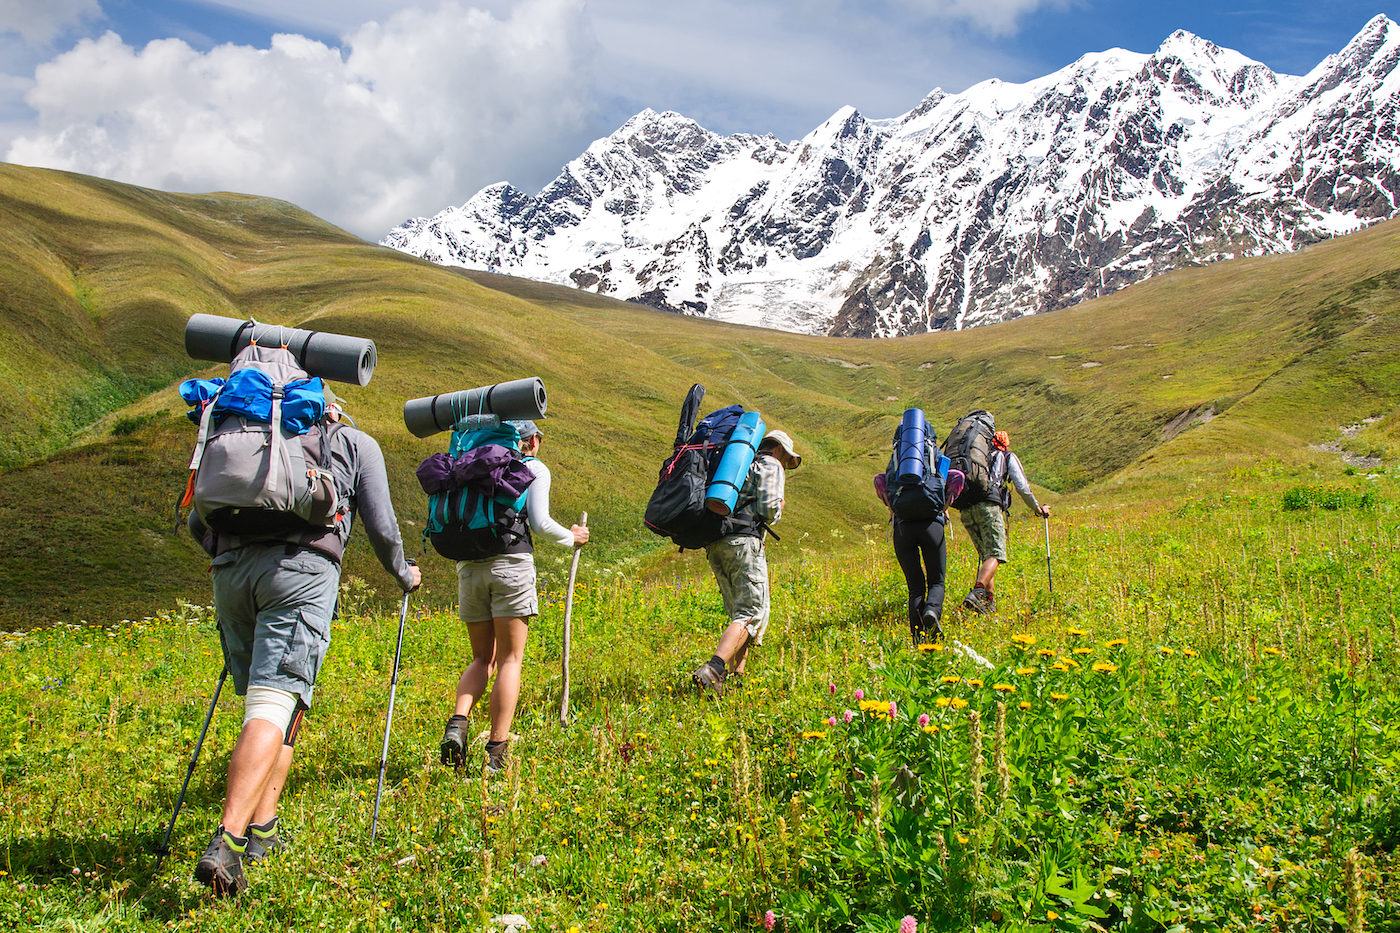 Hikers op een heuvel in het Kaukasus gebergte.